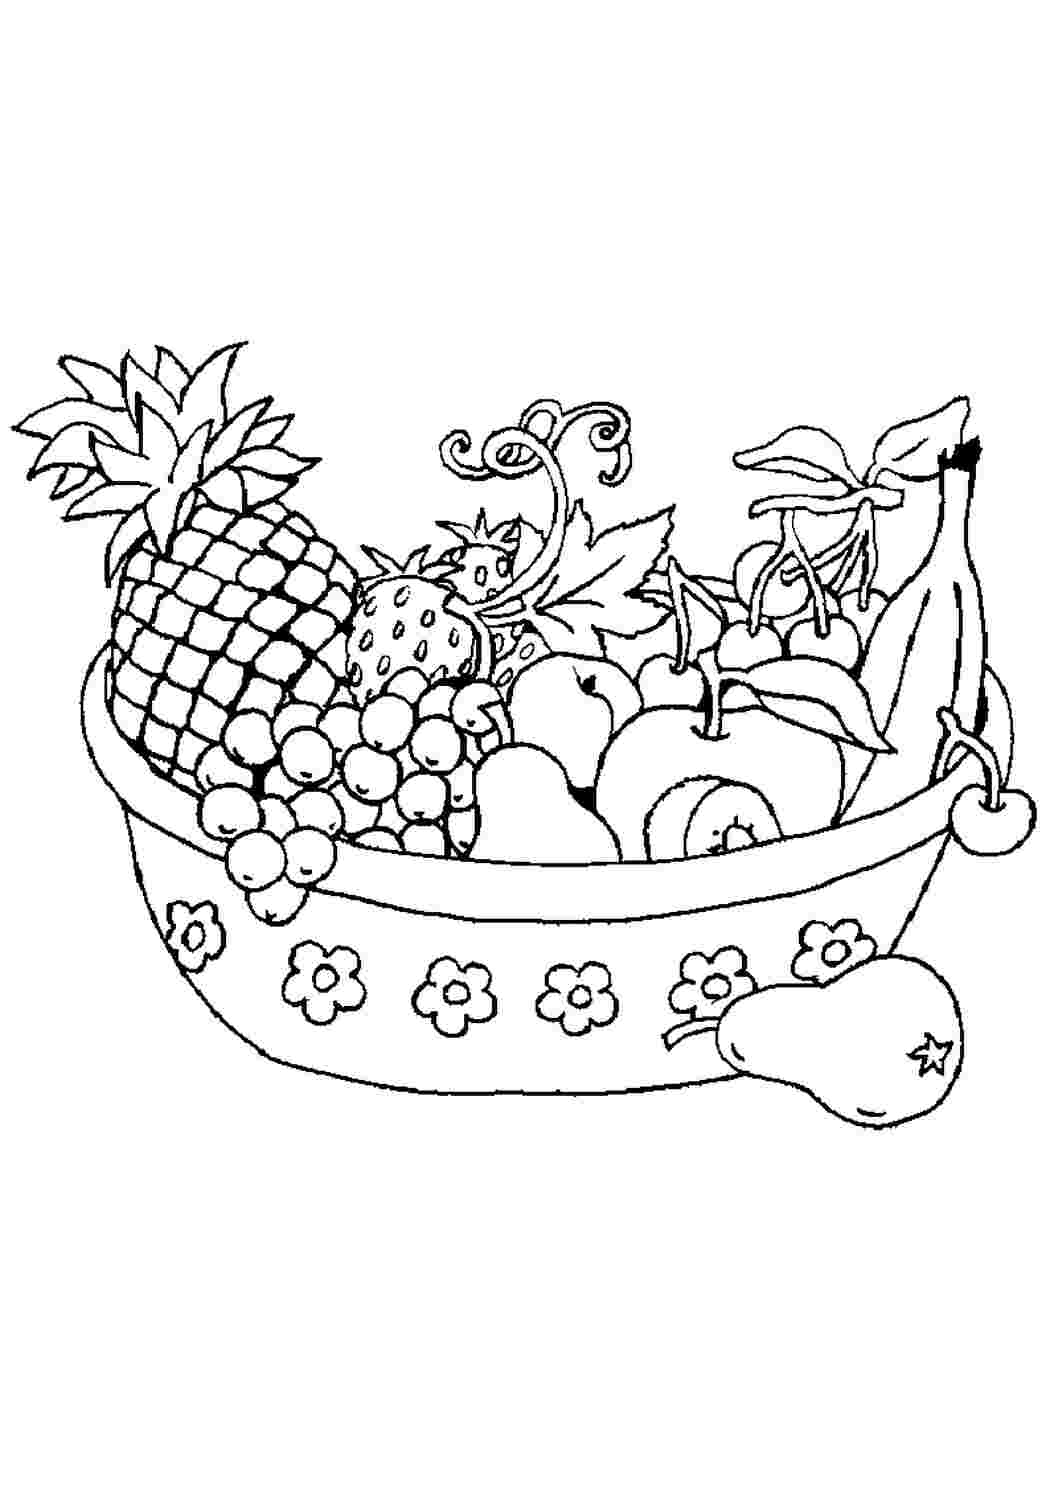 Раскраски фруктов и овощей для дошкольников